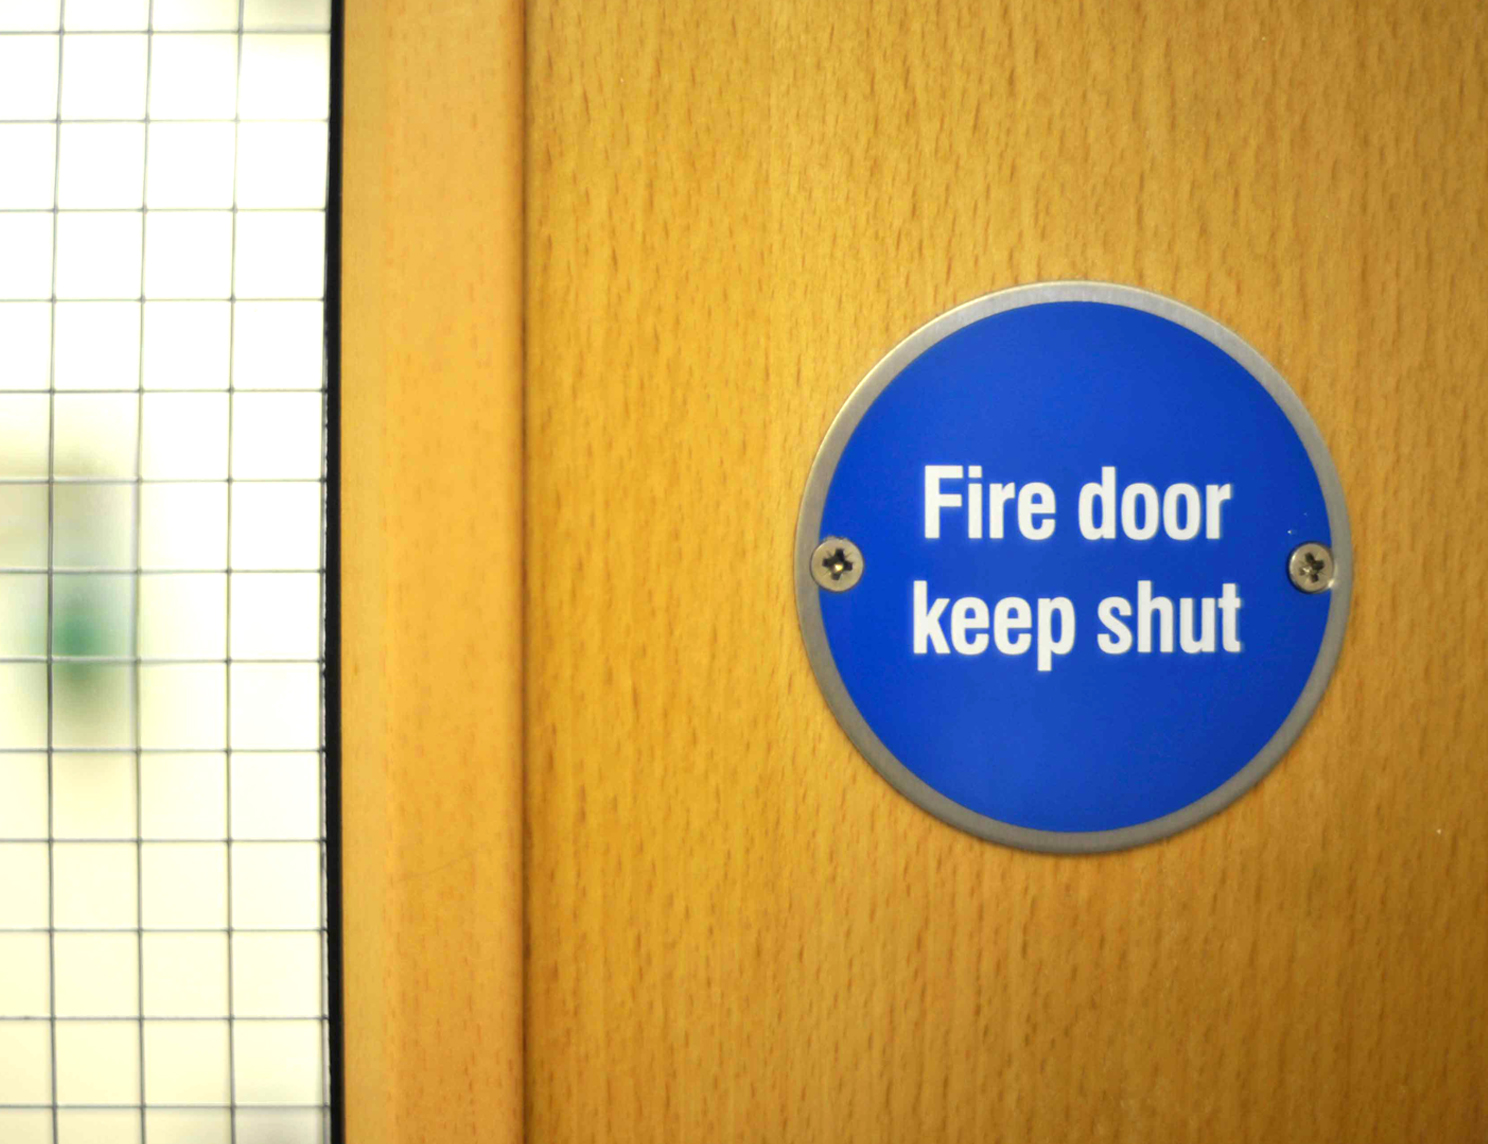 Fire door with keep shut door sign